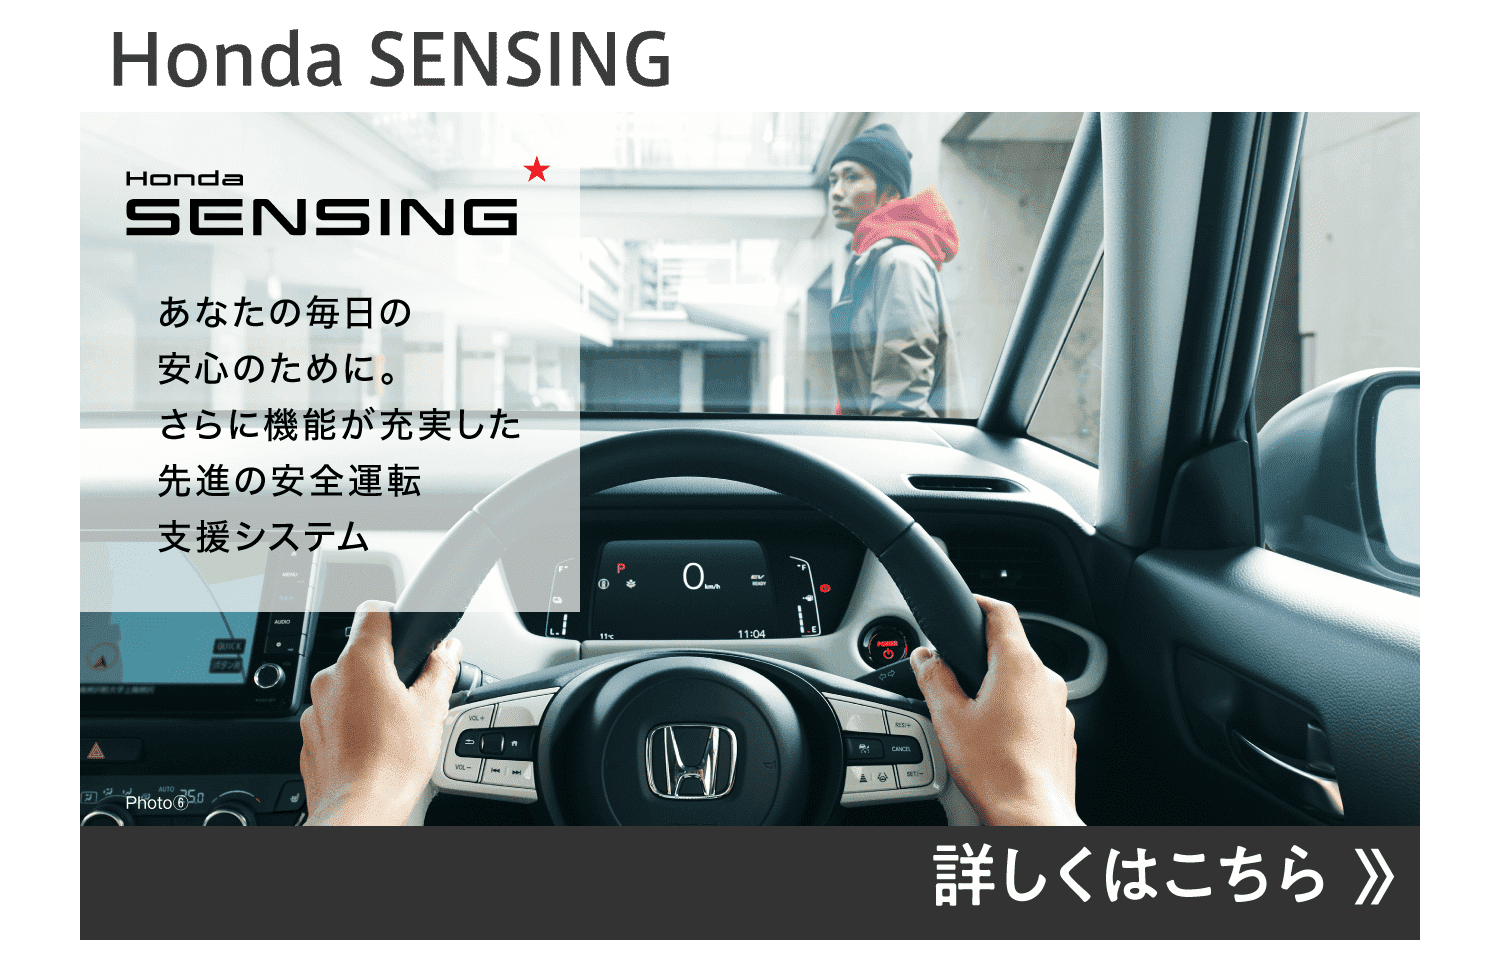 Honda SENSING